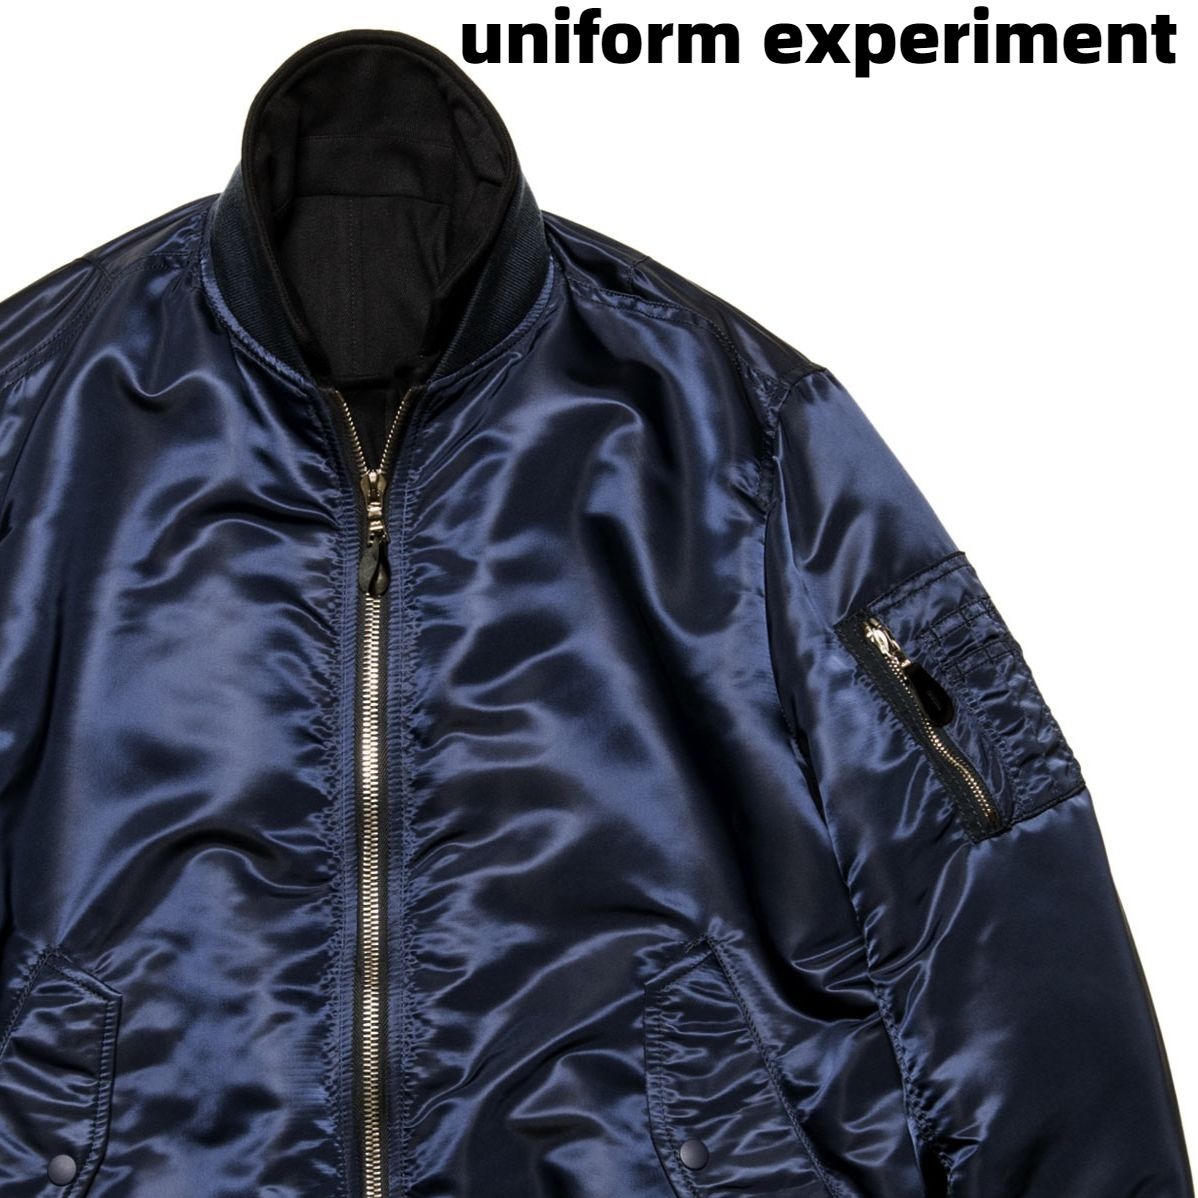 購入OK experiment uniform リバーシブル ブラック MA-1 フライトジャケット